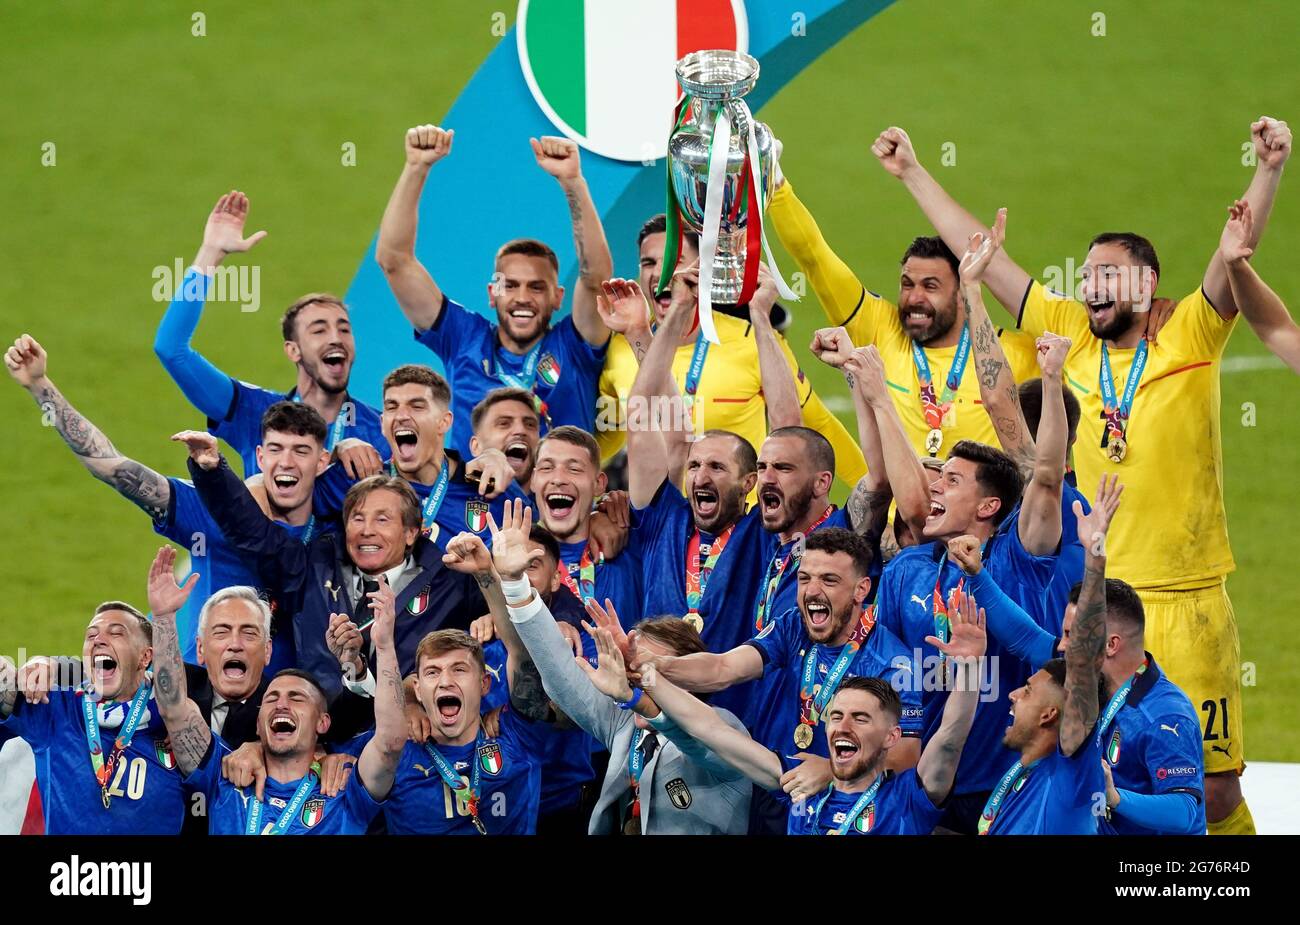 Italien Kapitän Giorgio Chiellini hebt die UEFA Euro 2020 Trophy nach seinem Sieg über England im Finale der UEFA Euro2020 im Wembley Stadium, London, an. Bilddatum: Sonntag, 11. Juli 2021. Stockfoto